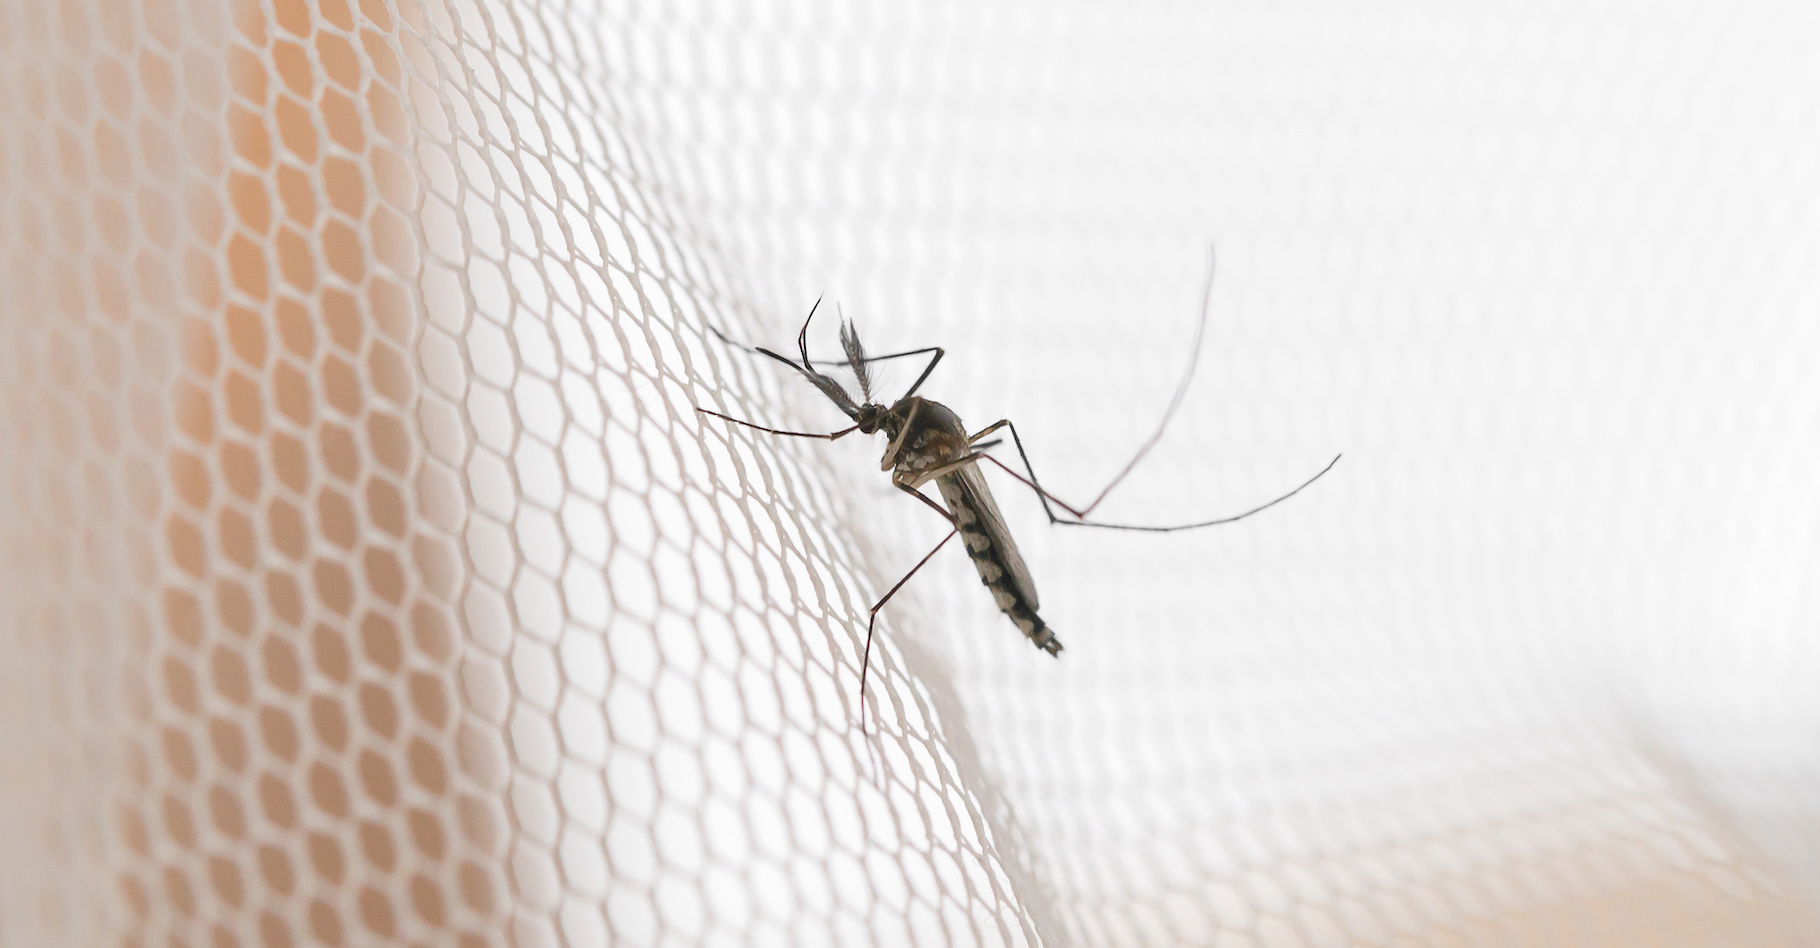 La diffusion de moustiquaires imprégnées d’insecticides a permis de faire reculer le paludisme. Mais les moustiques deviennent résistants. Heureusement, les chercheurs ont de la ressource. Une équipe de l’université du Texas à El Paso (États-Unis) avance que l’ajout de simple savon aux insecticides peut augmenter leur efficacité. © grooveriderz, Adobe Stock